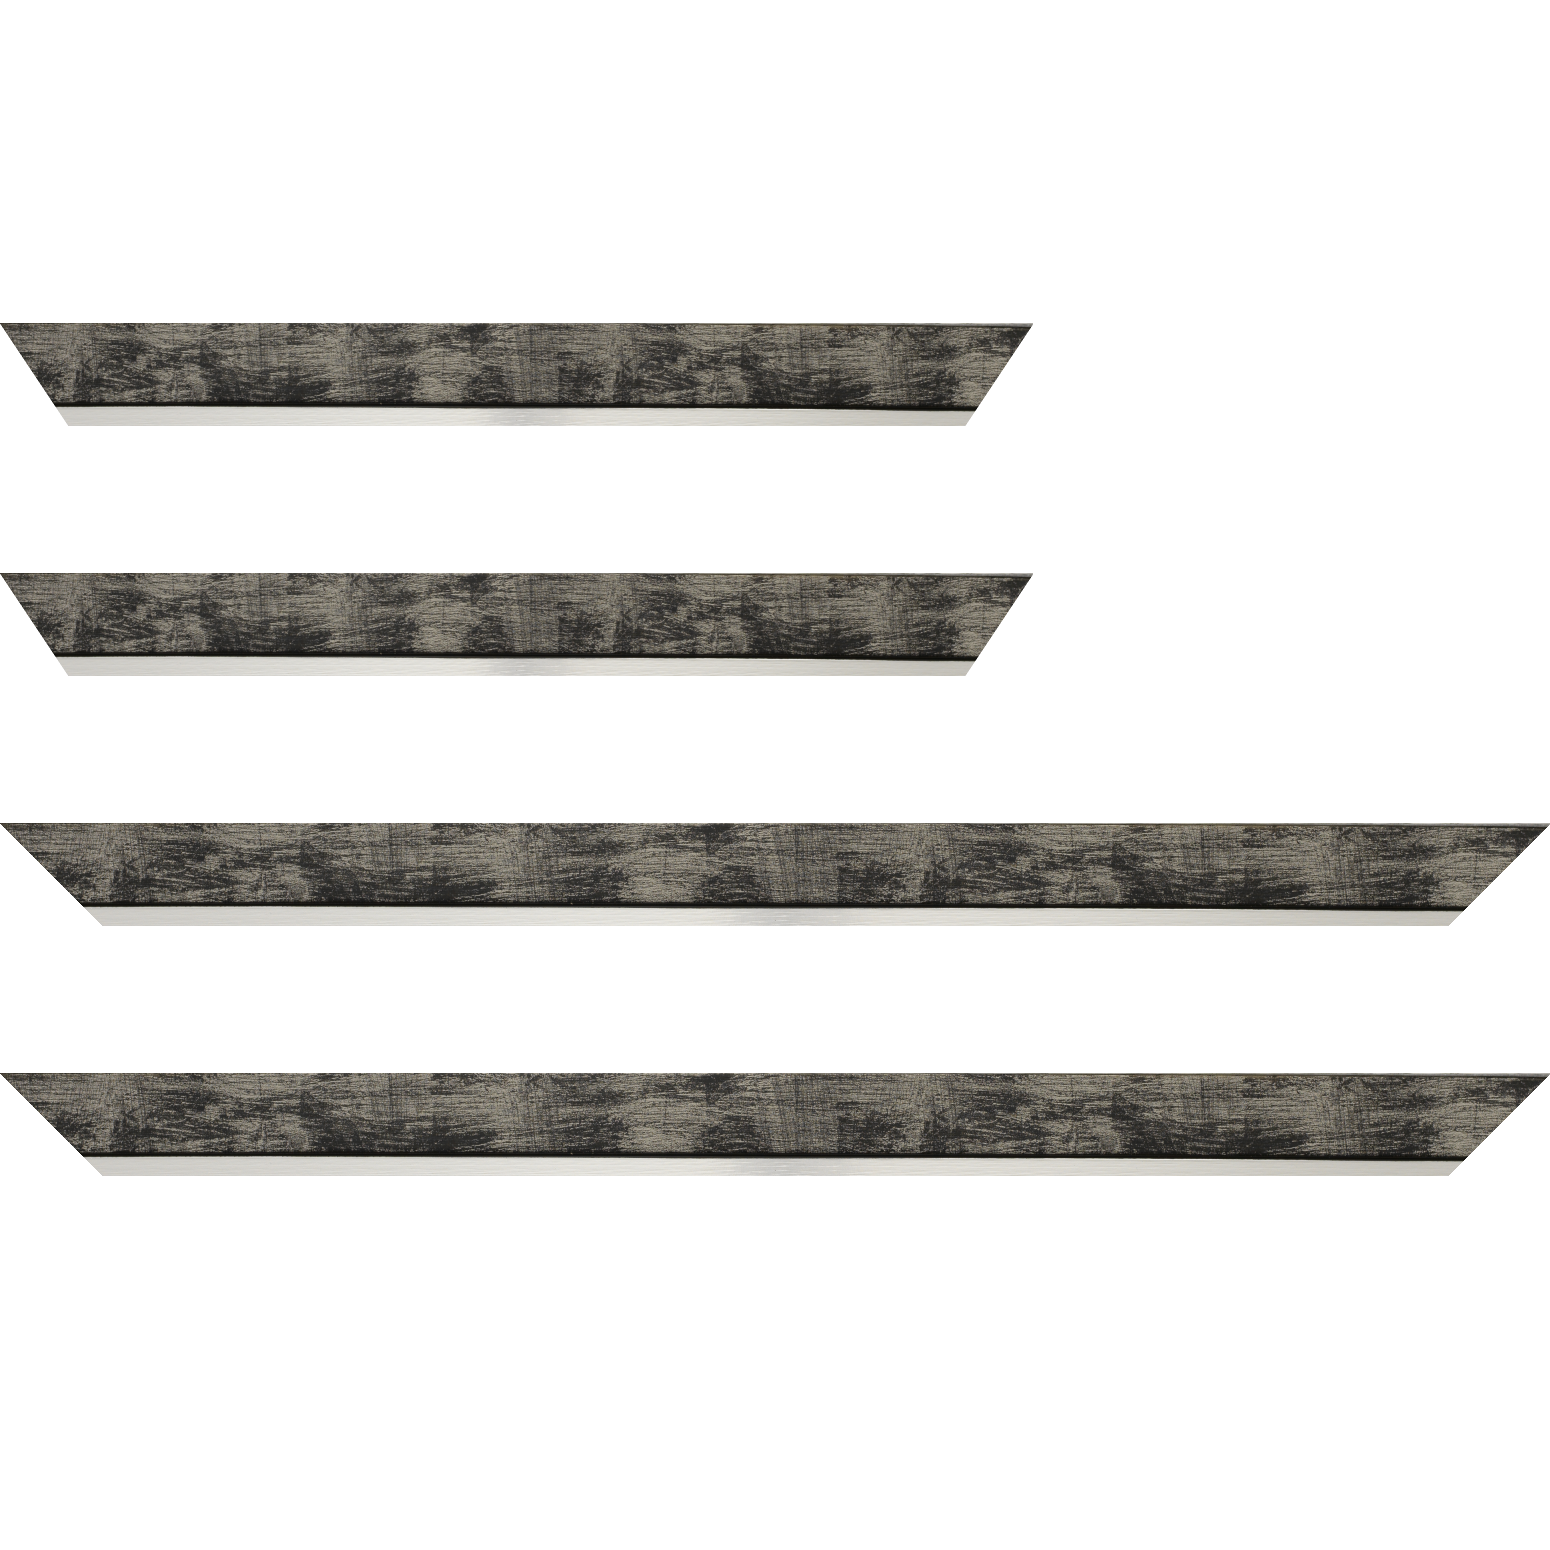 Baguette bois profil plat largeur 3.3cm couleur noir fond argent filet argent - 30x90